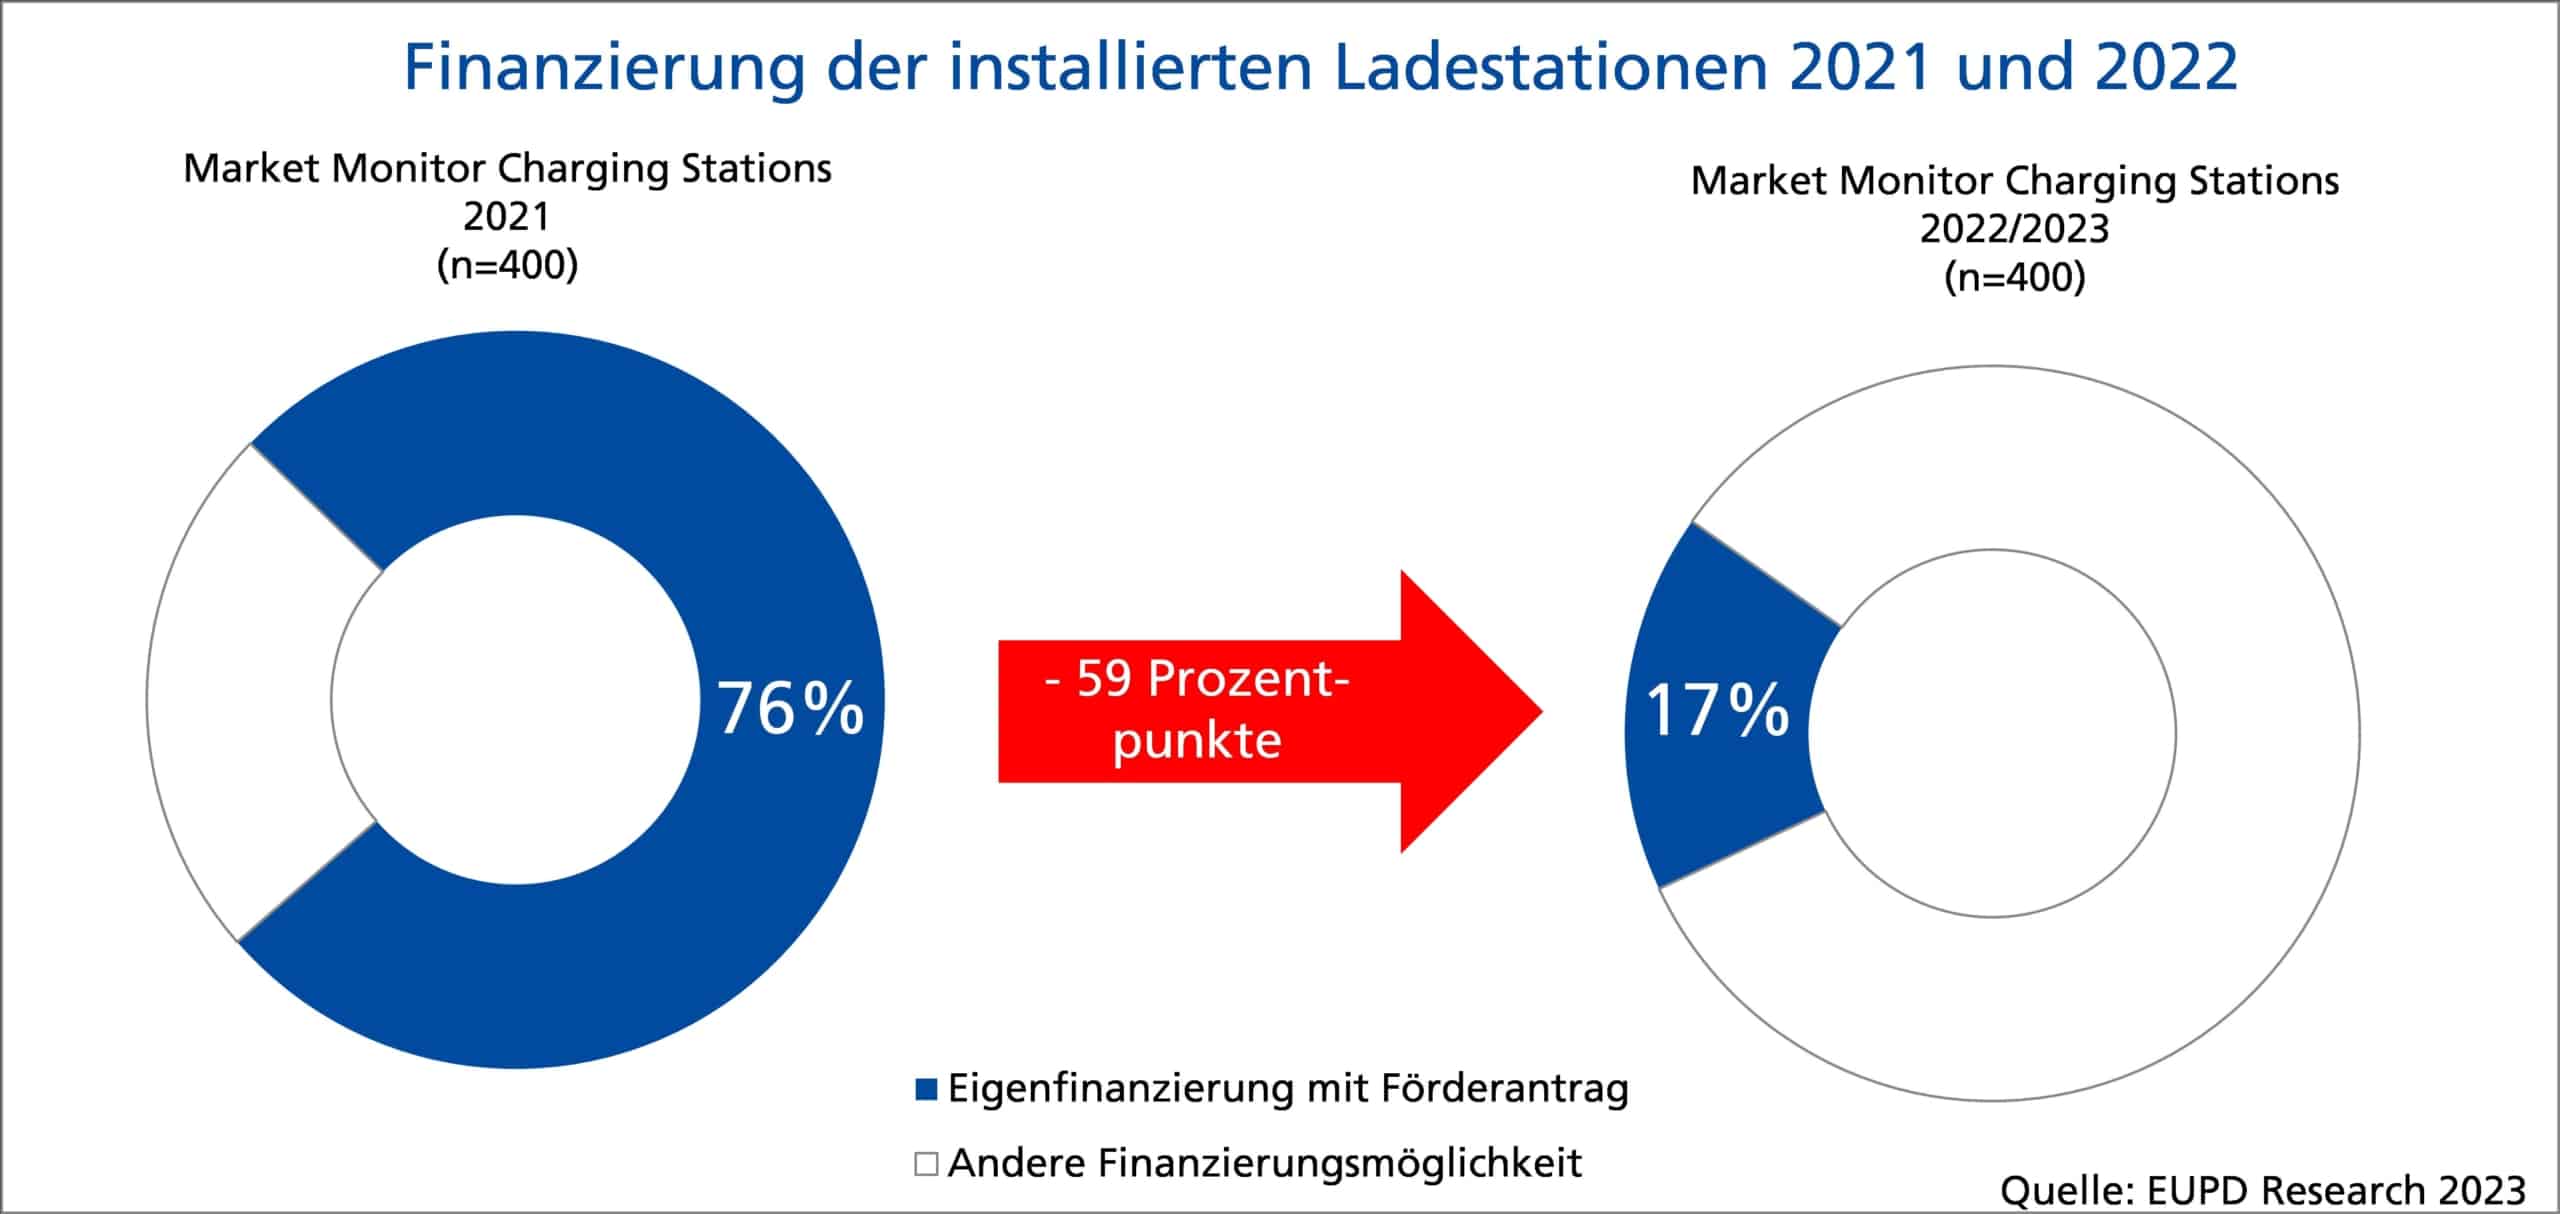 Statistik über die Finanzierung der installierten Ladestationen in den Jahren 2021 und 2022.